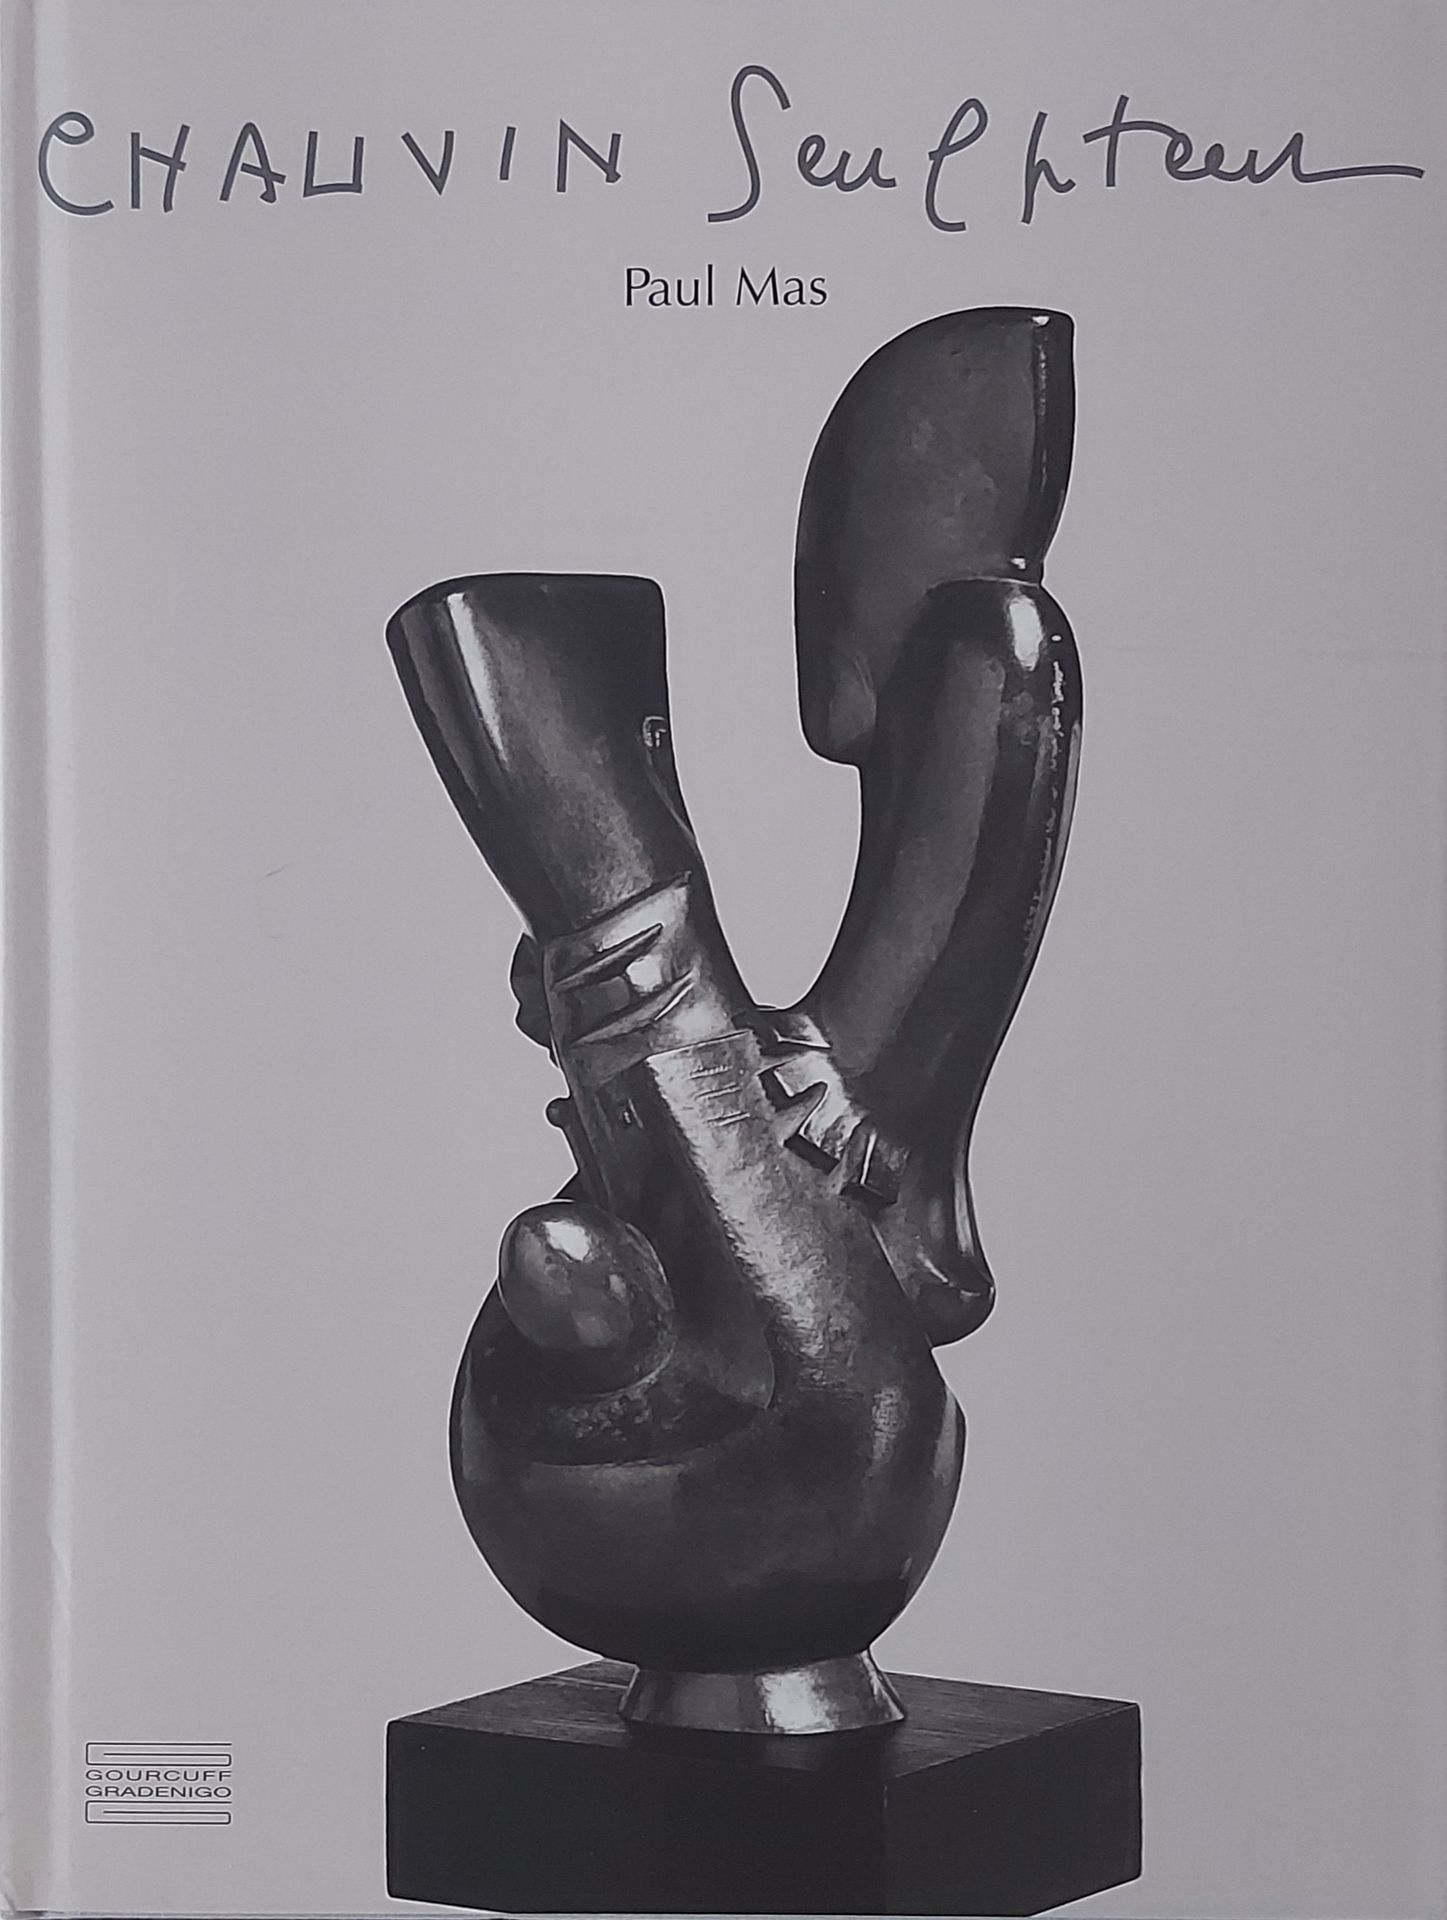 JEAN CHAUVIN - Paul Mas, Jean Chauvin Sculpteur, Gourcouf Gradenigo, Paris, 2007&hellip;